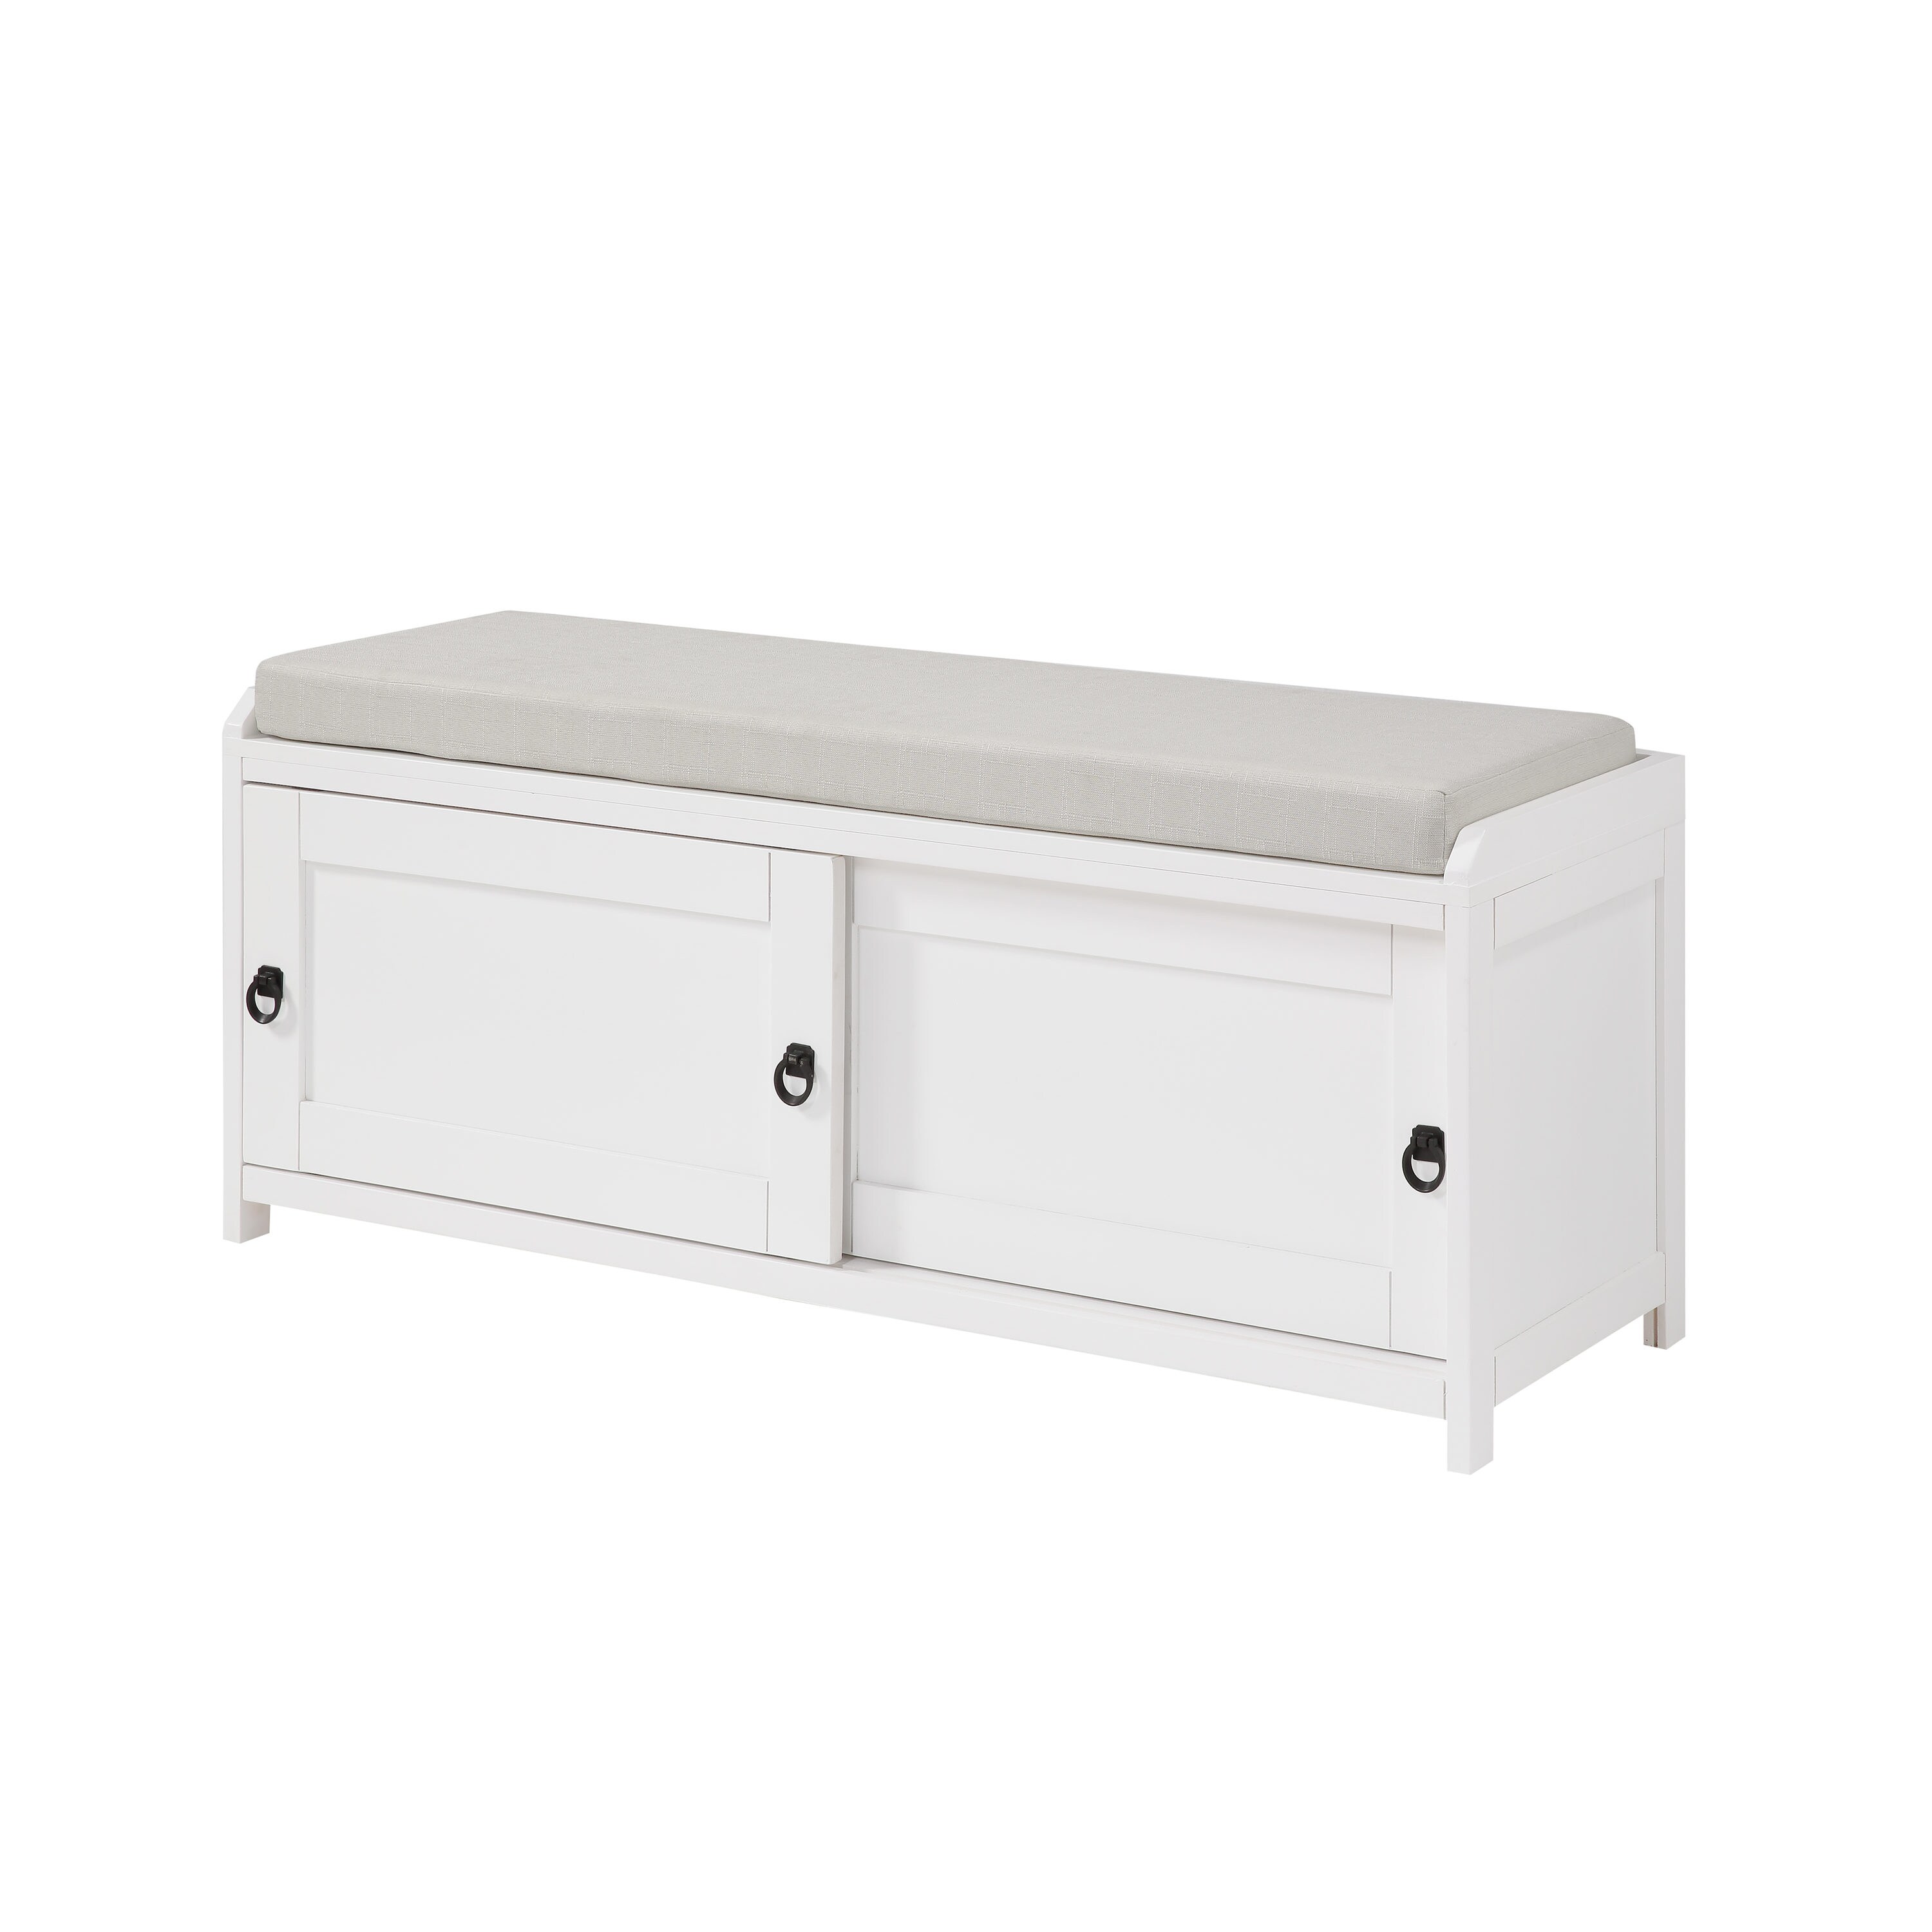 CASAINC Modern White Storage Bench with Storage 15.3-in x 46.8-in x 19. ...